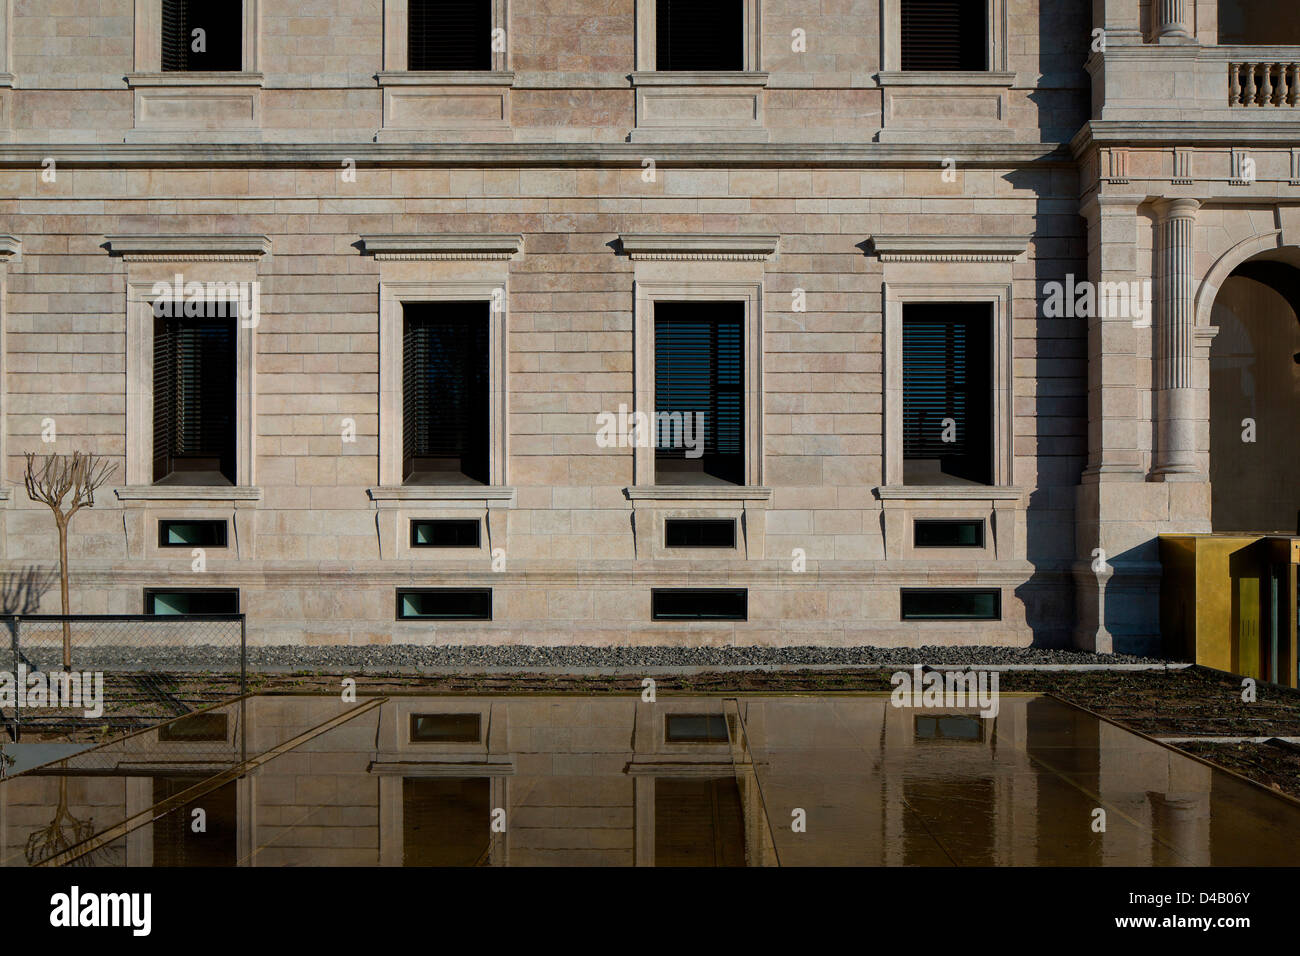 Palacio De Justicia in Burgos, Burgos, Spain. Architect: Primitivo Gonzalez Arquitecto, 2012. Facade detail with reflection in p Stock Photo